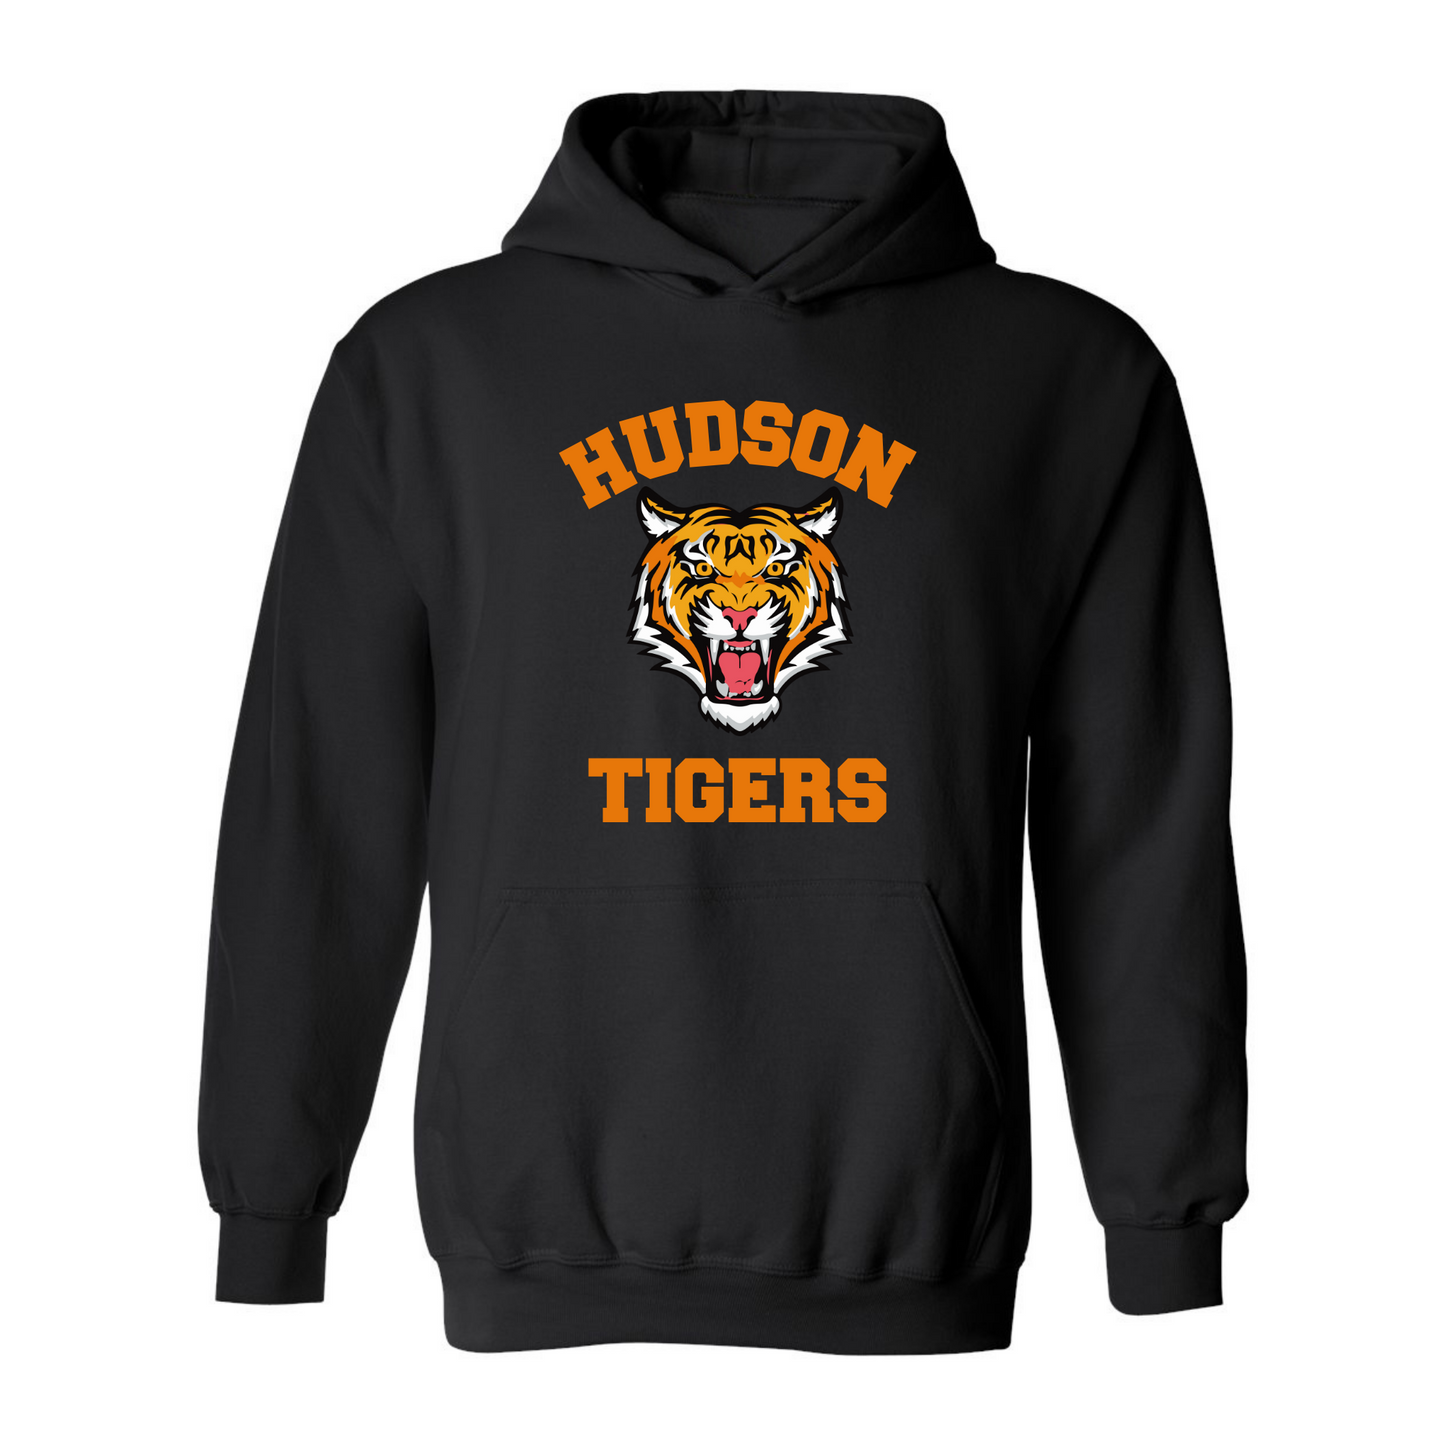 Hudson Tigers Hoodie